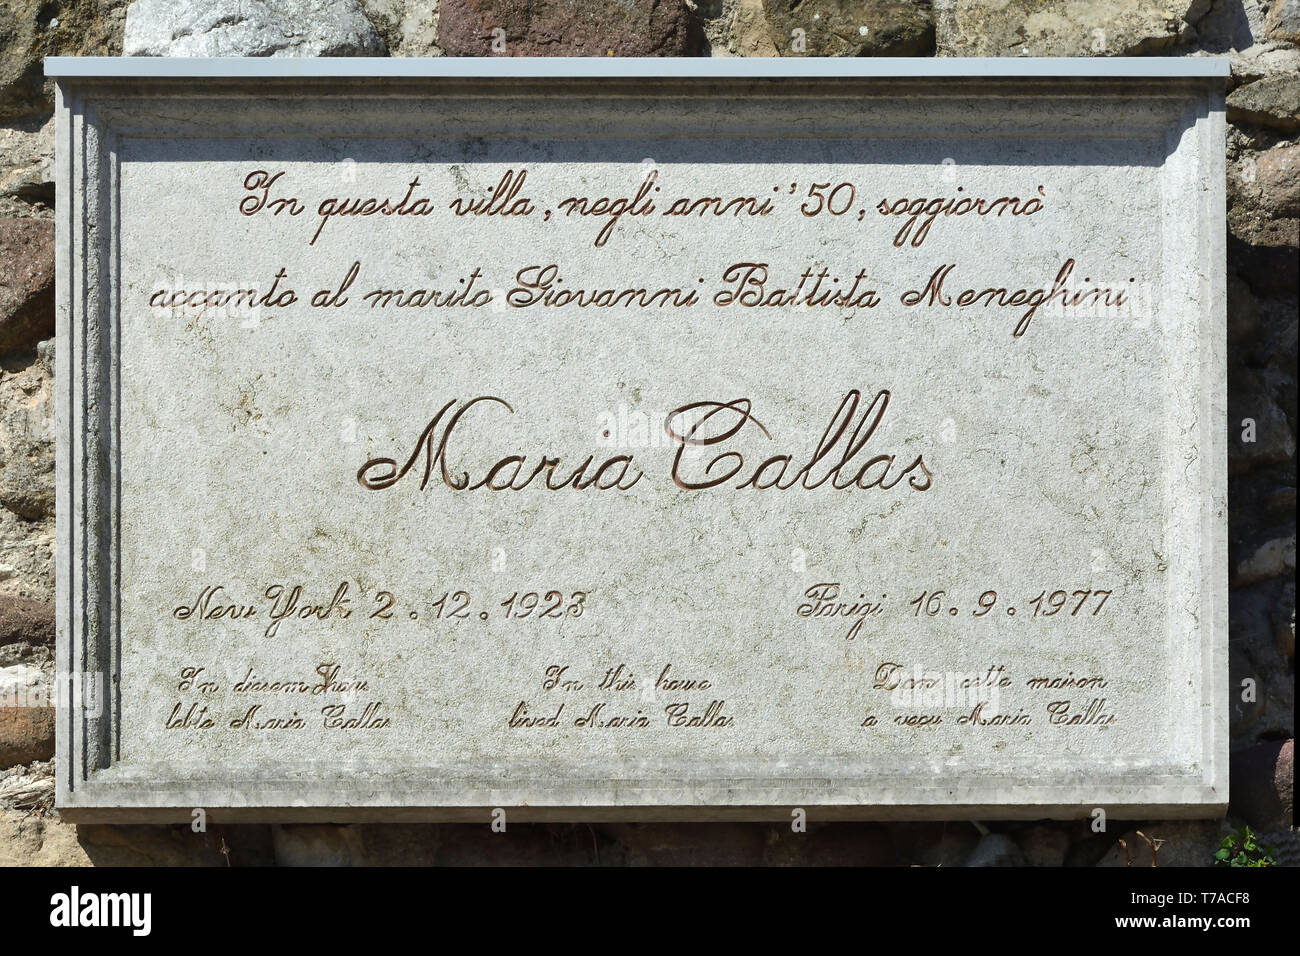 Sirmione, Lombardei, Italien - September 04, 2018: Gedenktafel für die griechische Sopranistin Maria Callas in Sirmione am Gardasee - Italien. Stockfoto